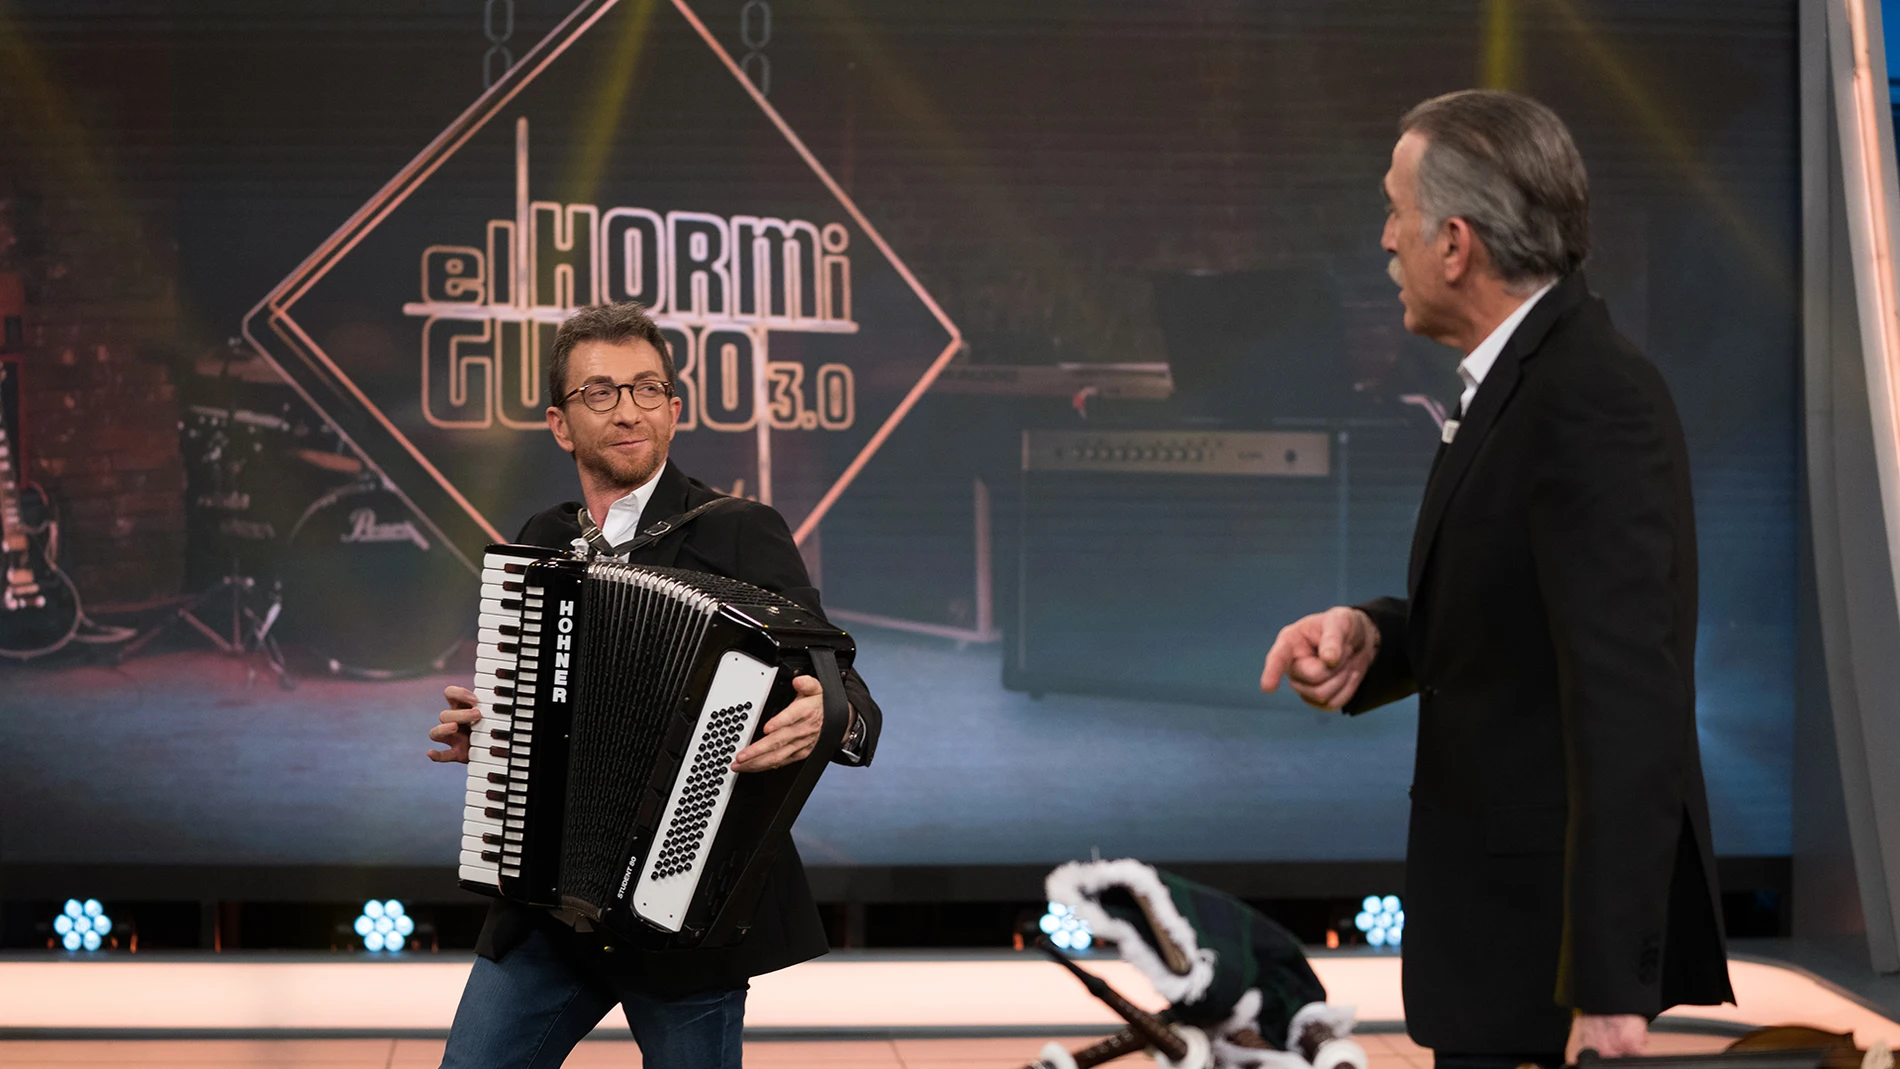 Pablo Motos y Juan y Medio improvisan varias canciones con complicados instrumentos en 'El Hormiguero 3.0'